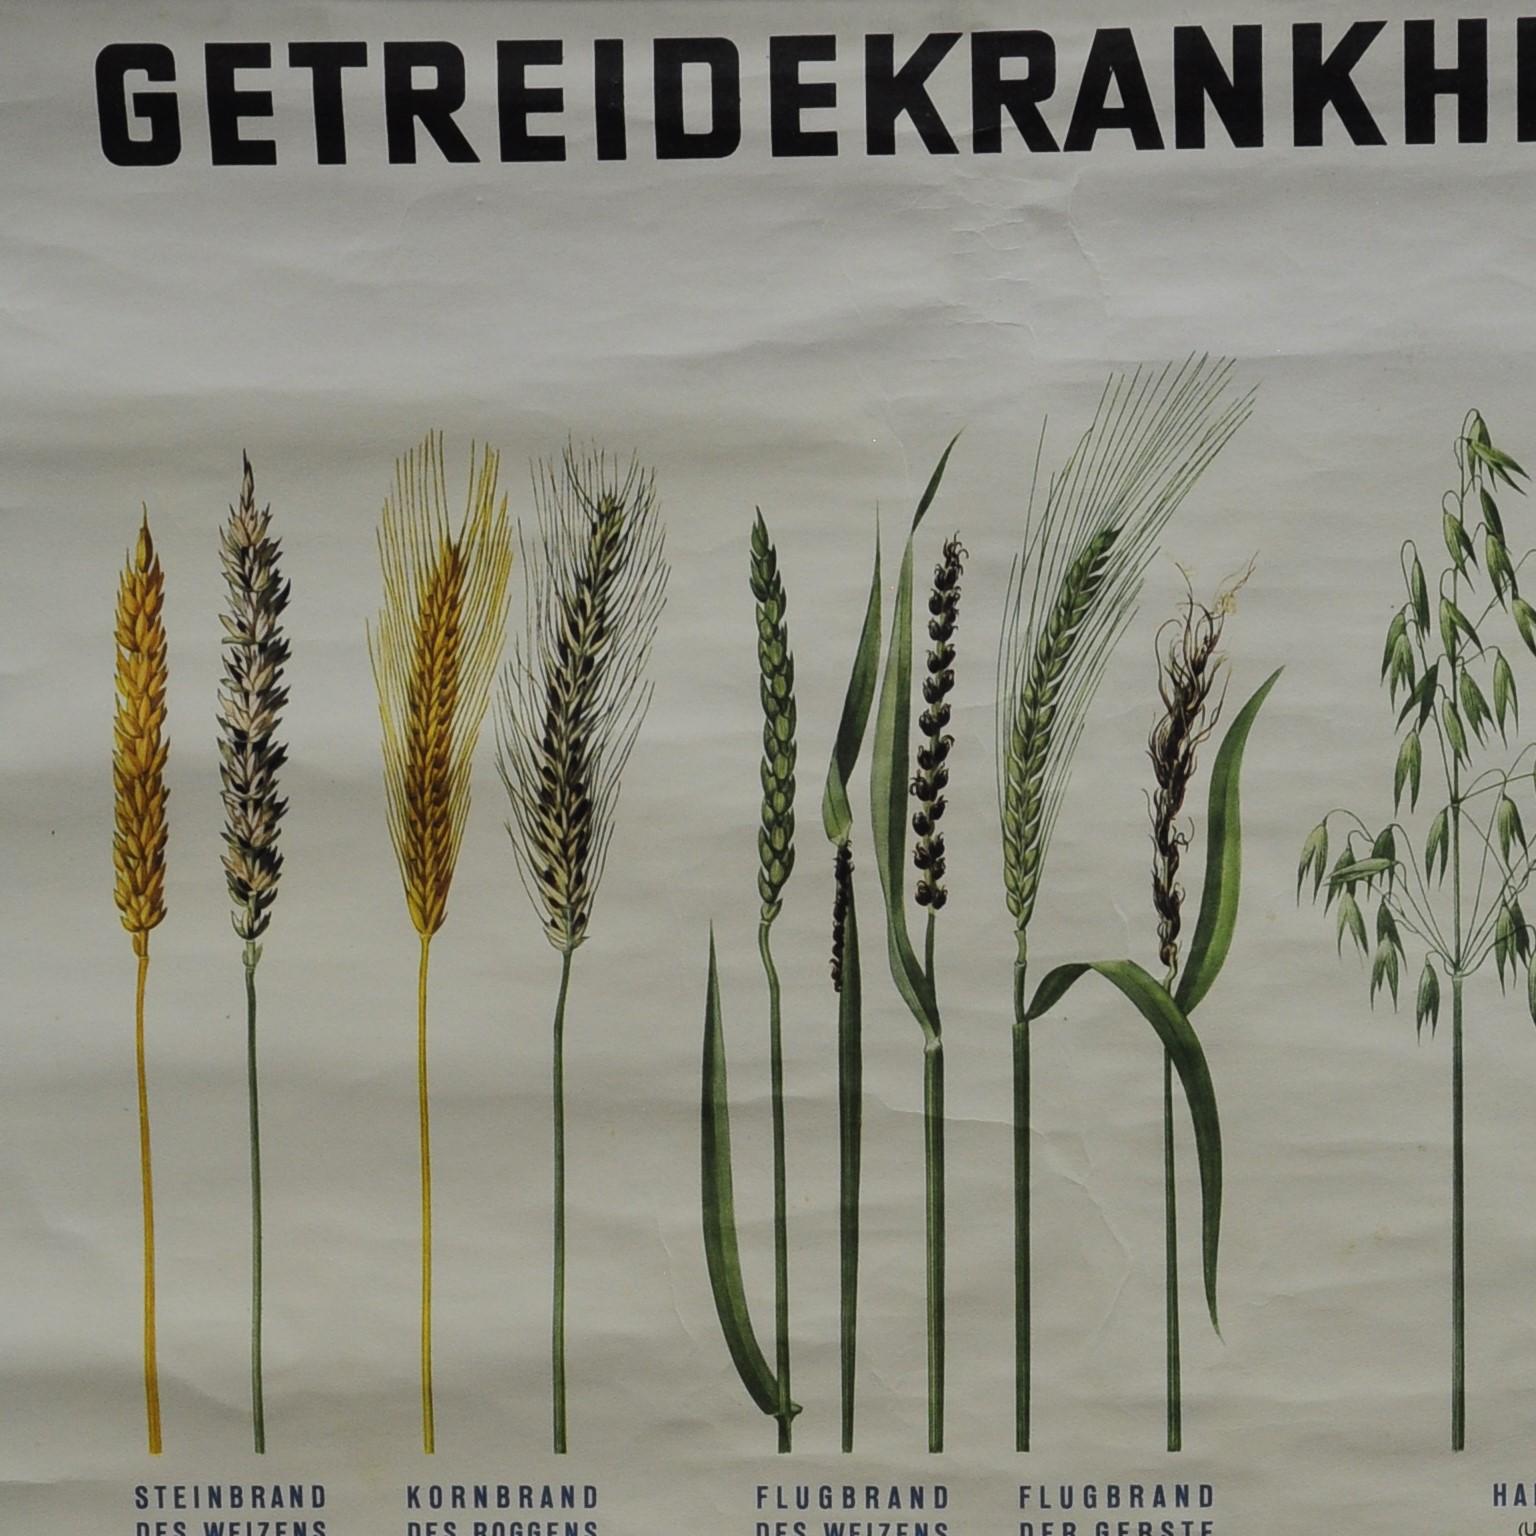 Eine aufrollbare botanische Wandtafel im Vintage-Stil zeigt verschiedene Arten von Pflanzenkrankheiten. Sie wurde von der Bundesanstalt für Pflanzenschutz, Wien, herausgegeben. Farbenfroher Druck auf mit Leinwand verstärktem